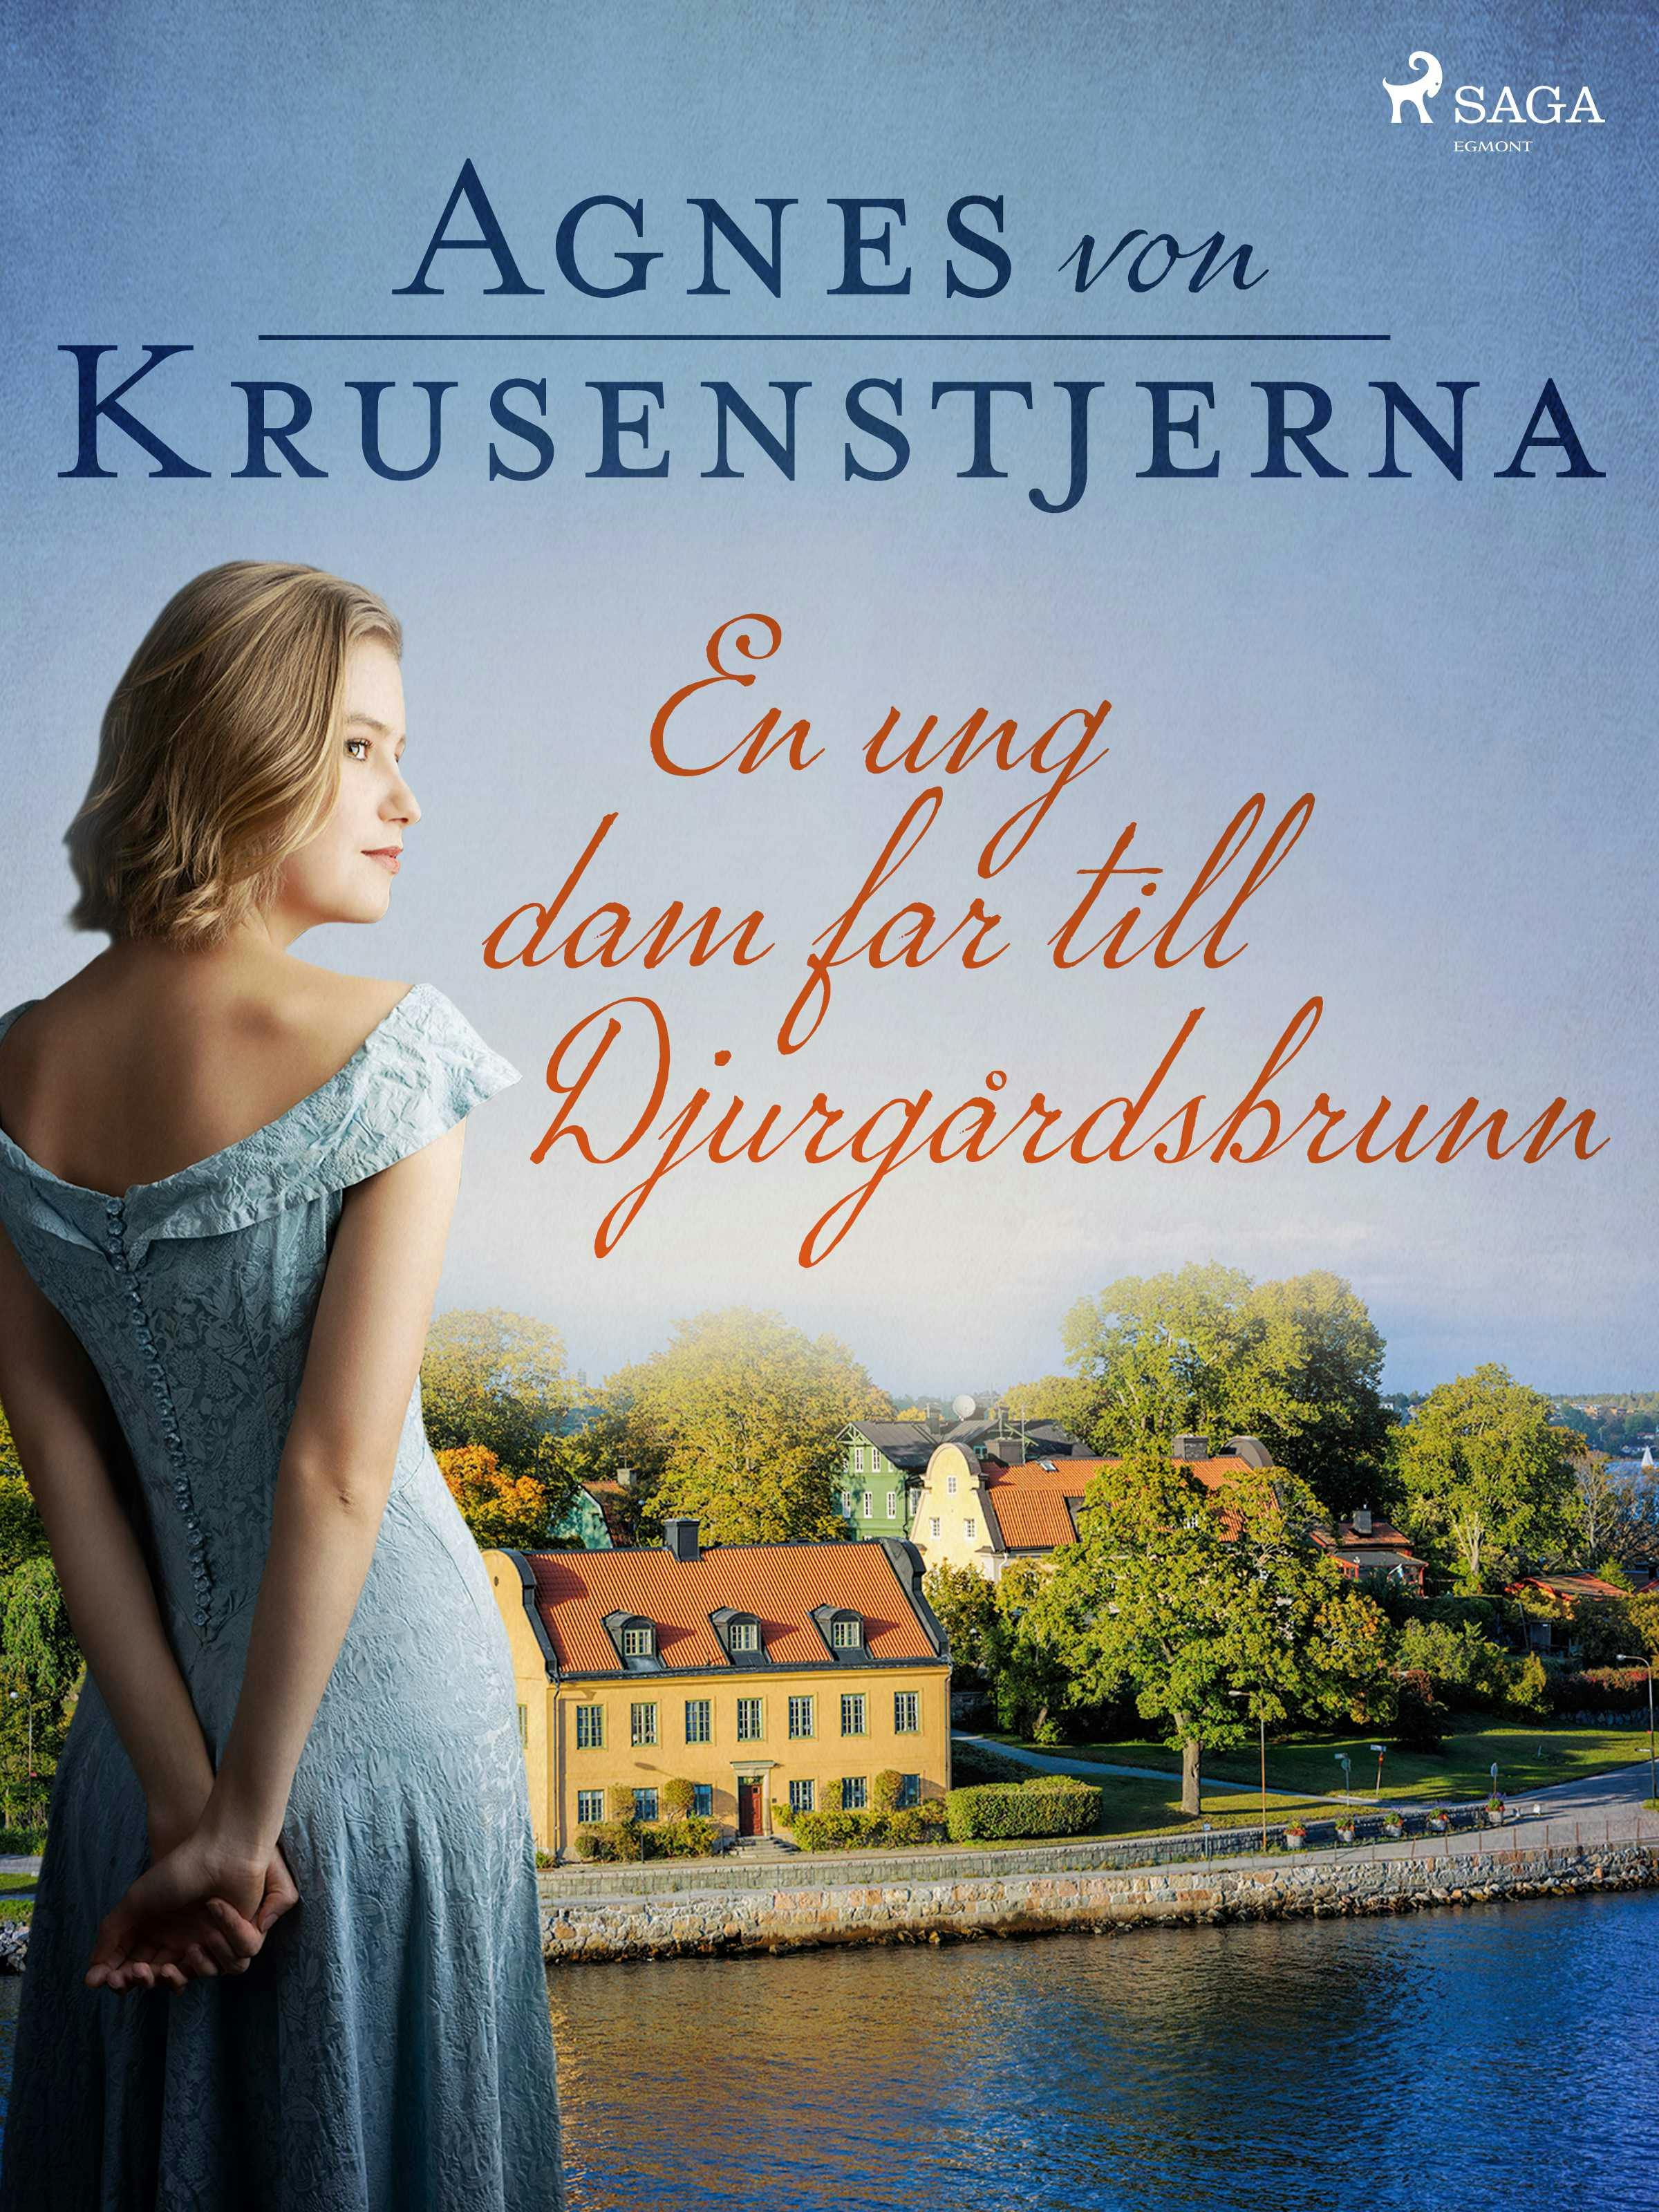 En ung dam far till Djurgårdsbrunn - Agnes Von Krusenstjerna